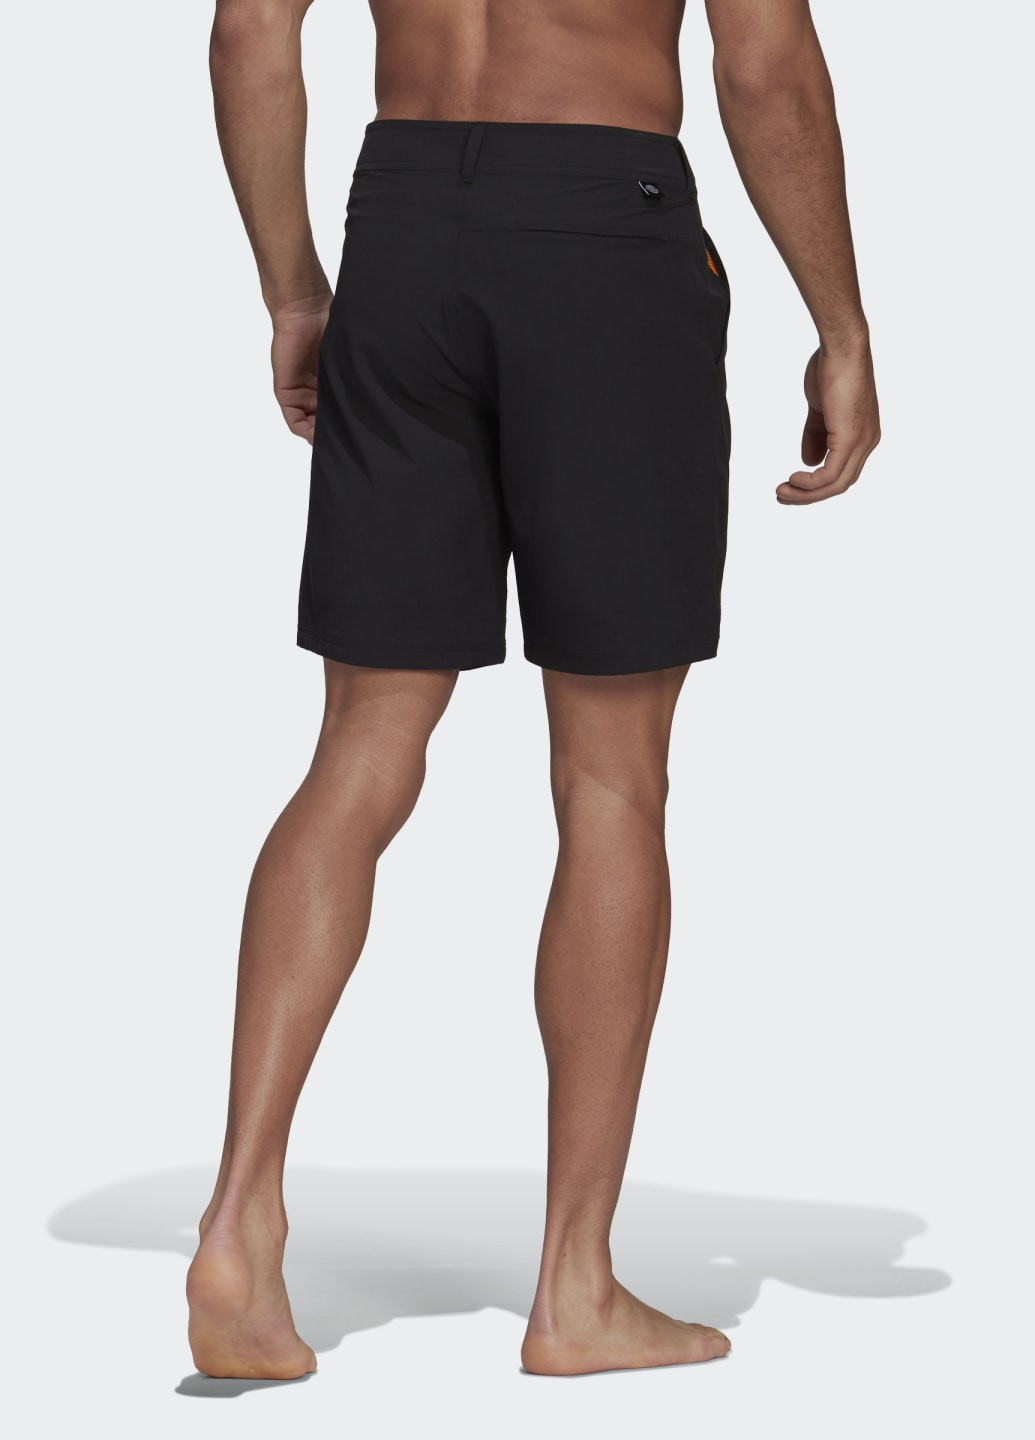 Мужские черные спортивные плавательные шорты classic length packable adidas